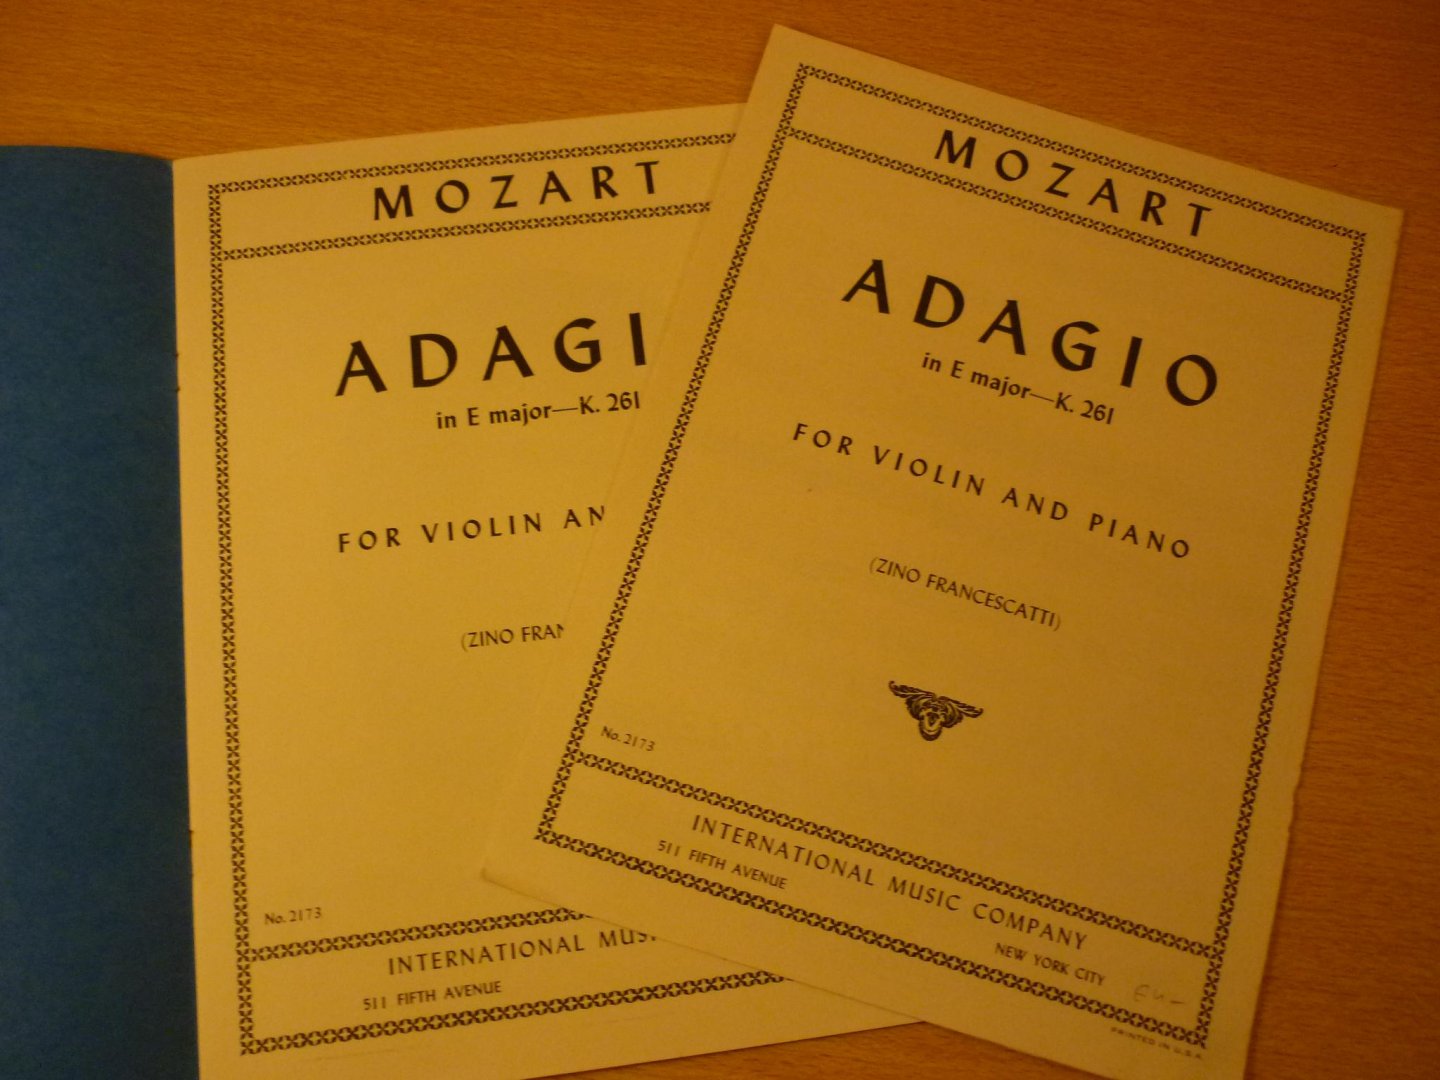 Mozart. W.A. (1756 – 1791) - Adagio in E major - K. 261; for Violin and Piano (Zino Francescatti)